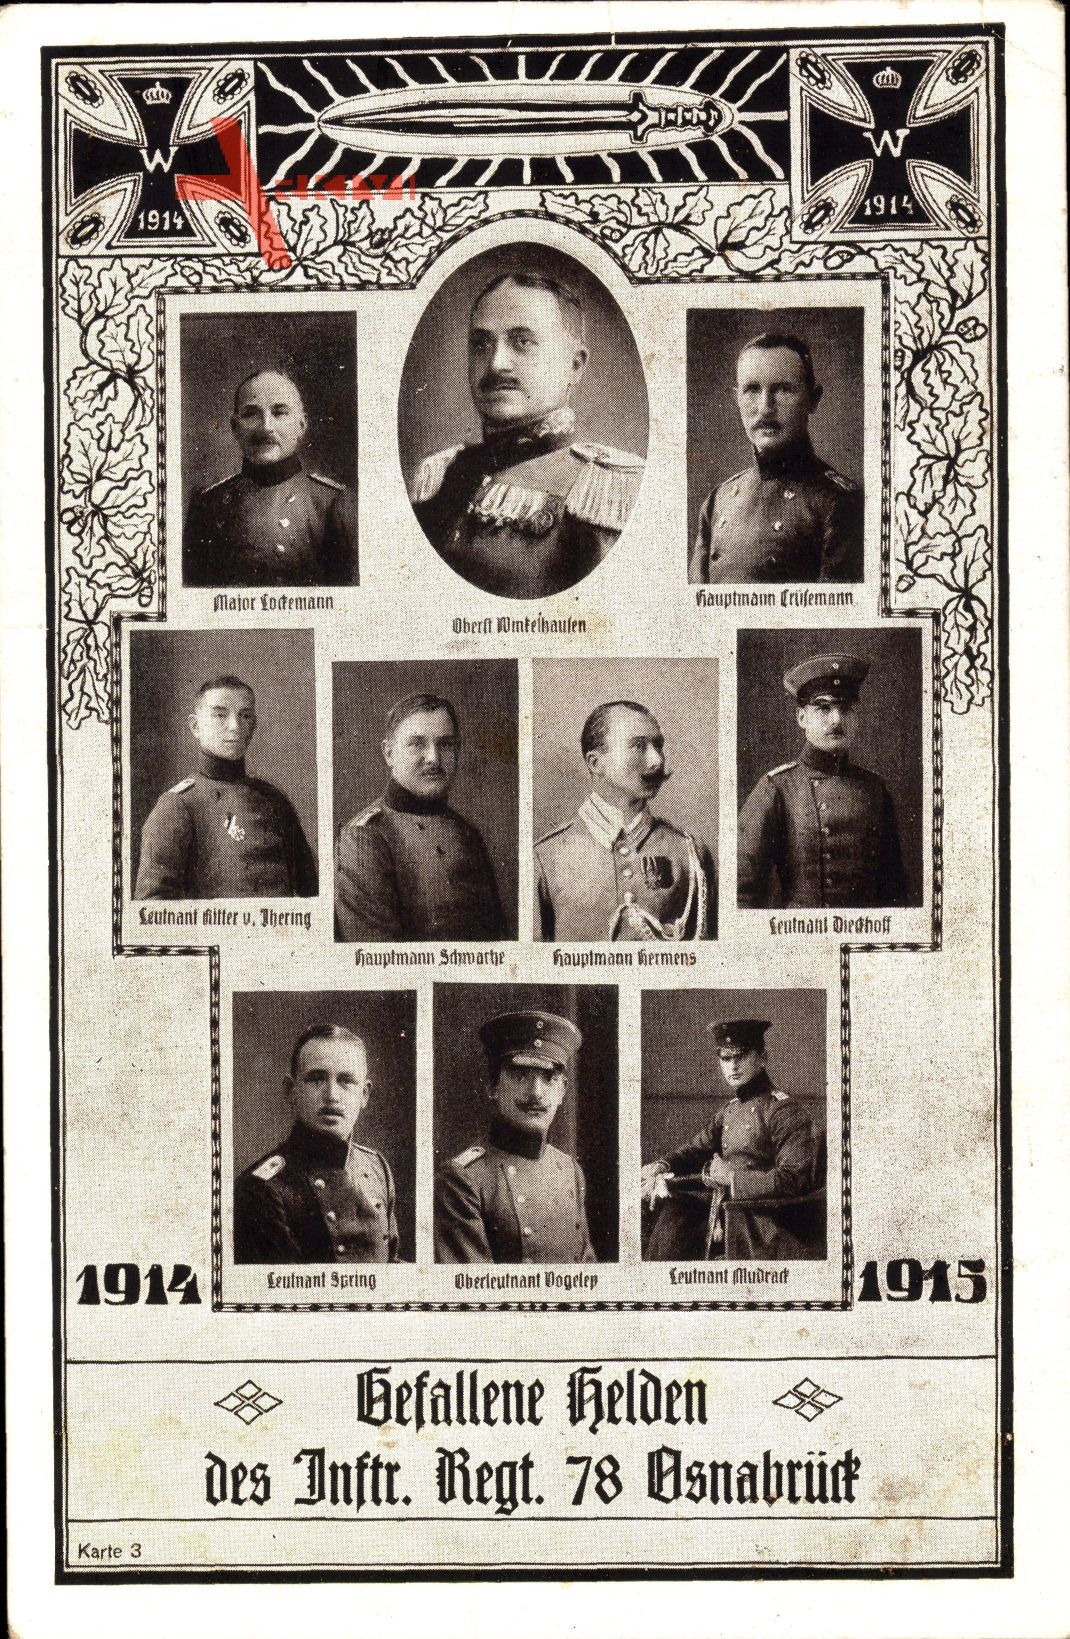 Regiment Osnabrück, Gefallene Helden des Inftr. Regt. 8, Oberst Wimtelhausen